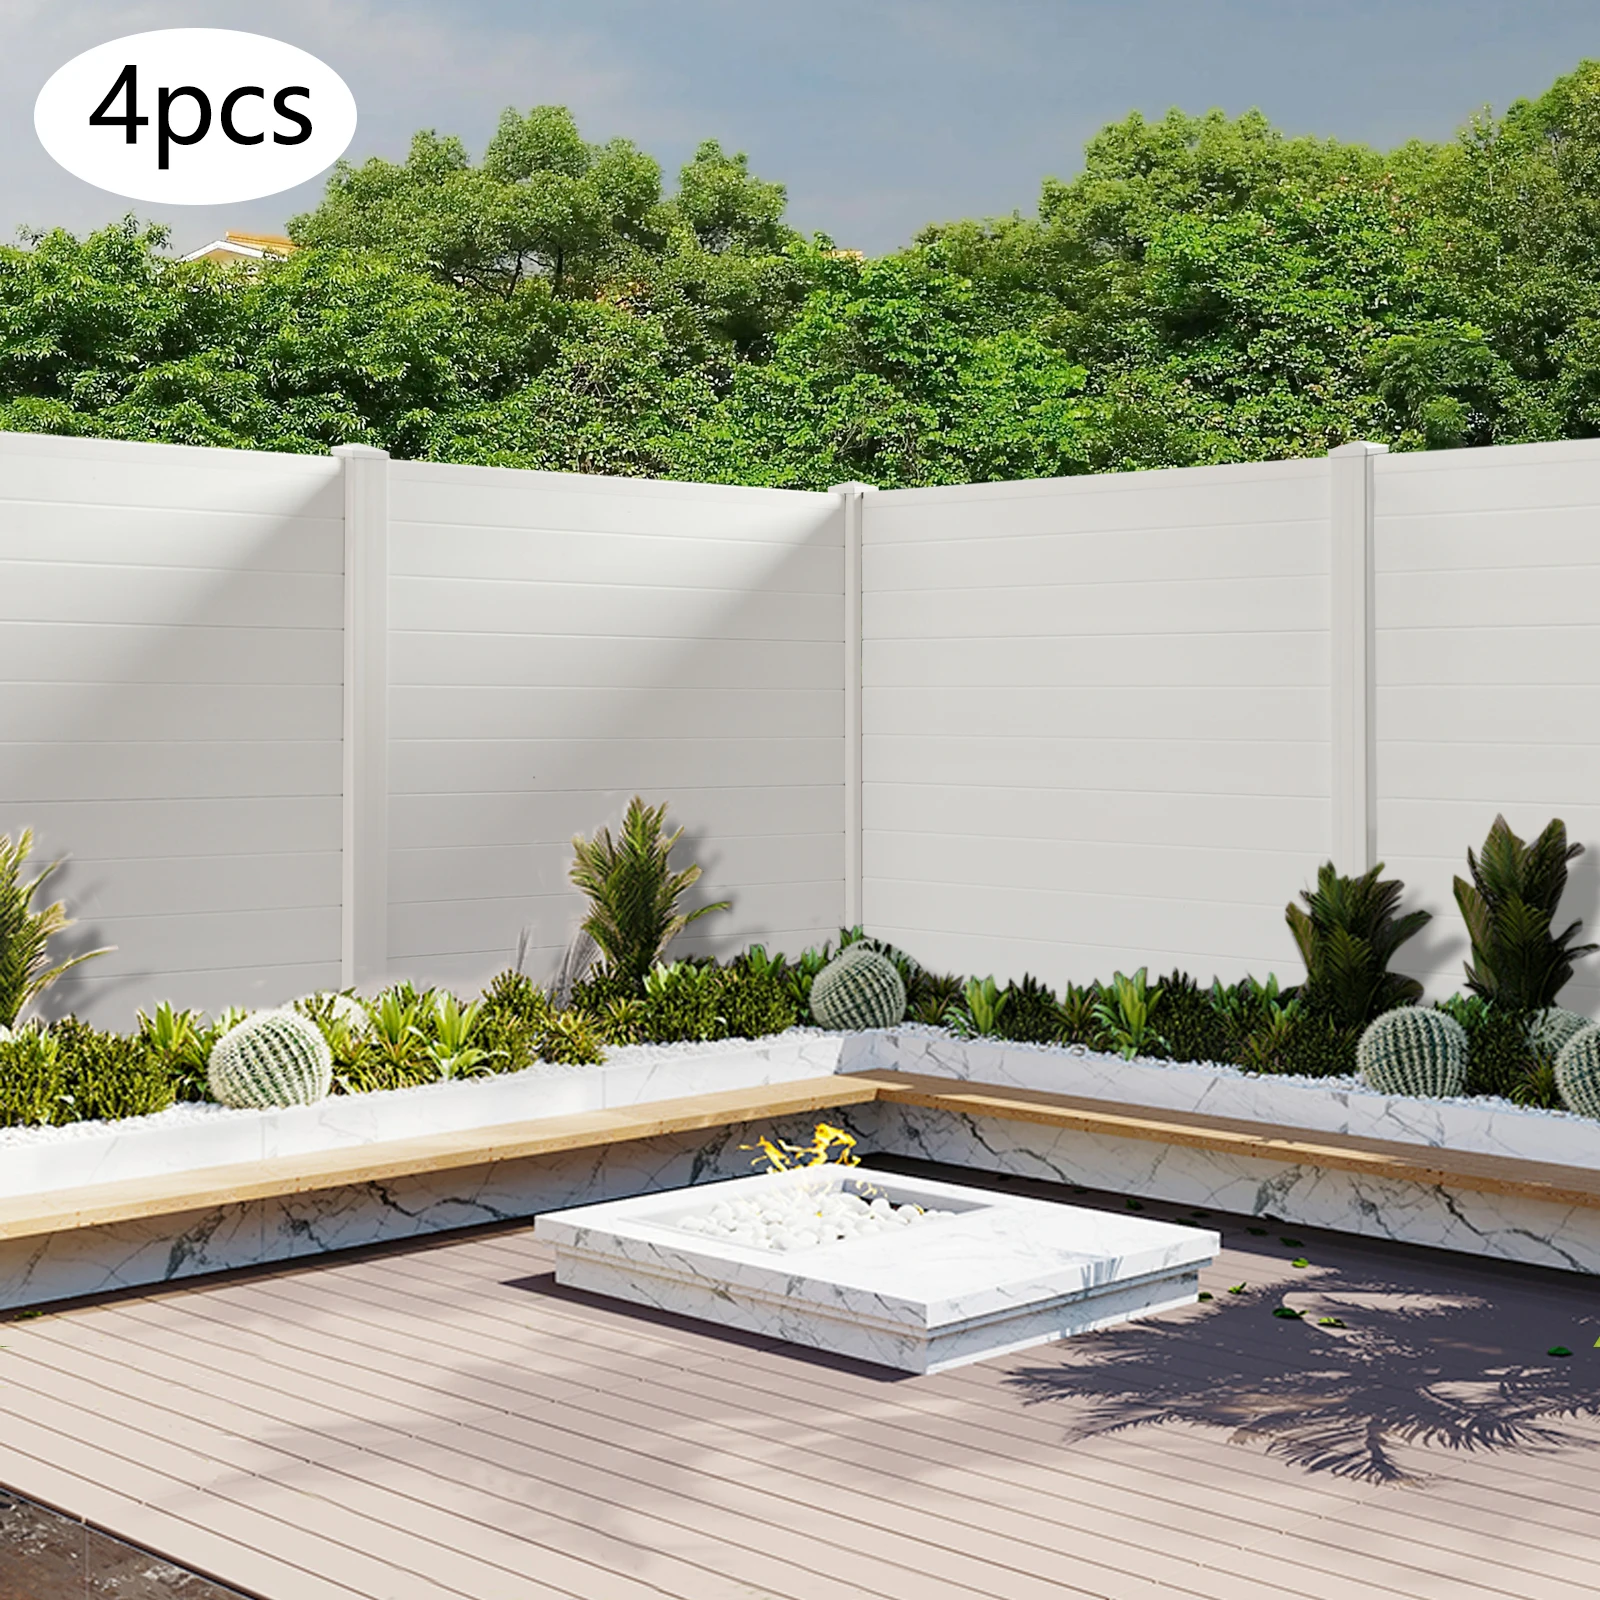 Valla decorativa: crea privacidad en tu jardín, terraza o patio